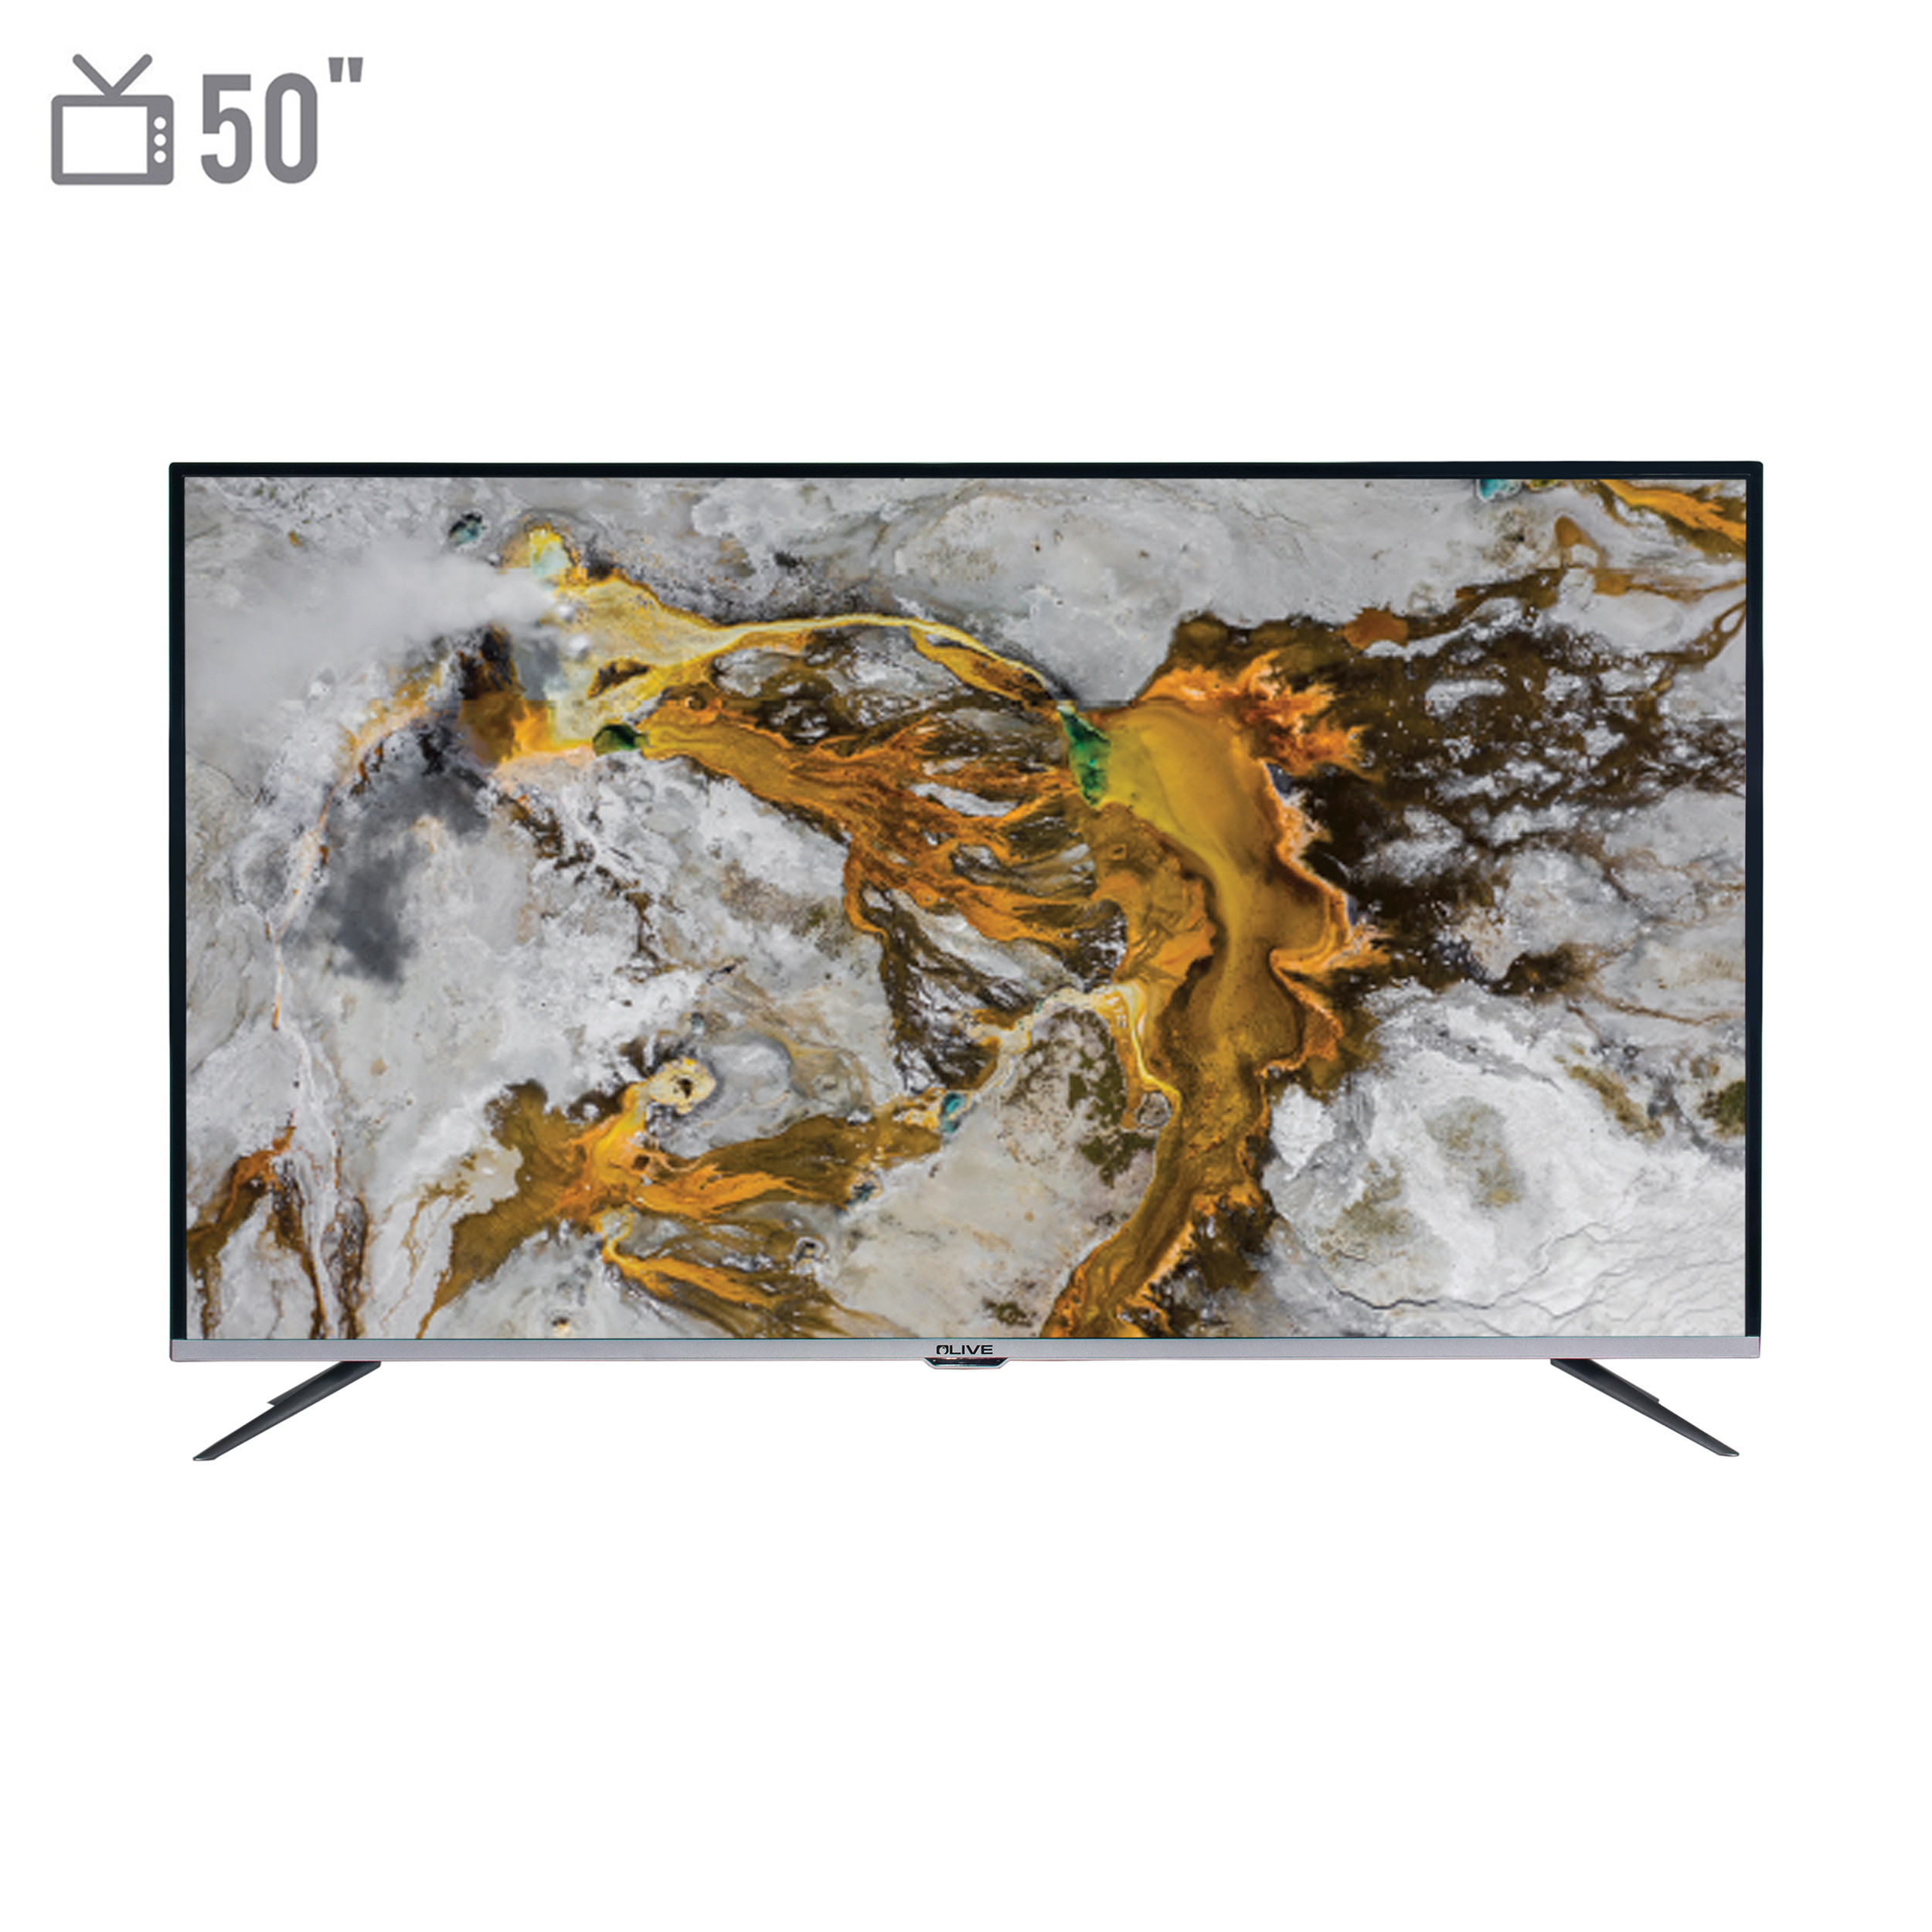 فروش نقدی و اقساطی تلويزيون ال ای دی هوشمند الیو مدل 50UE8430 سایز 50 اینچ